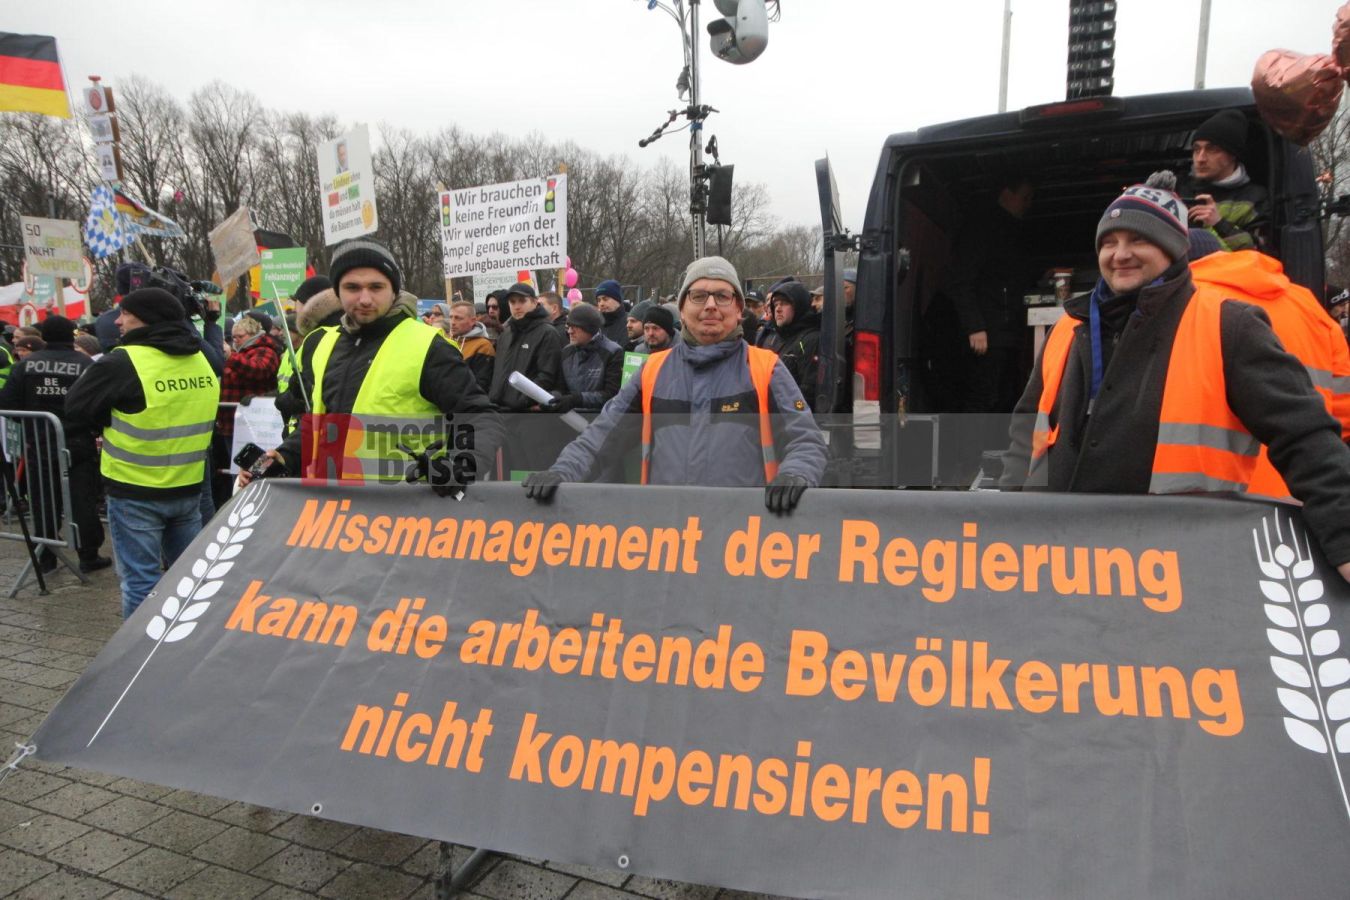 Bauernprotest in Berlin <i>Bild Denner/R-mediabase</i> <br><a href=/confor2/?bld=79046&pst=78995&aid=86&i1=Denner/R-mediabase>Download Bild 79046</a>  <br><a href=/?p=78995>Zum Beitrag 78995</a>